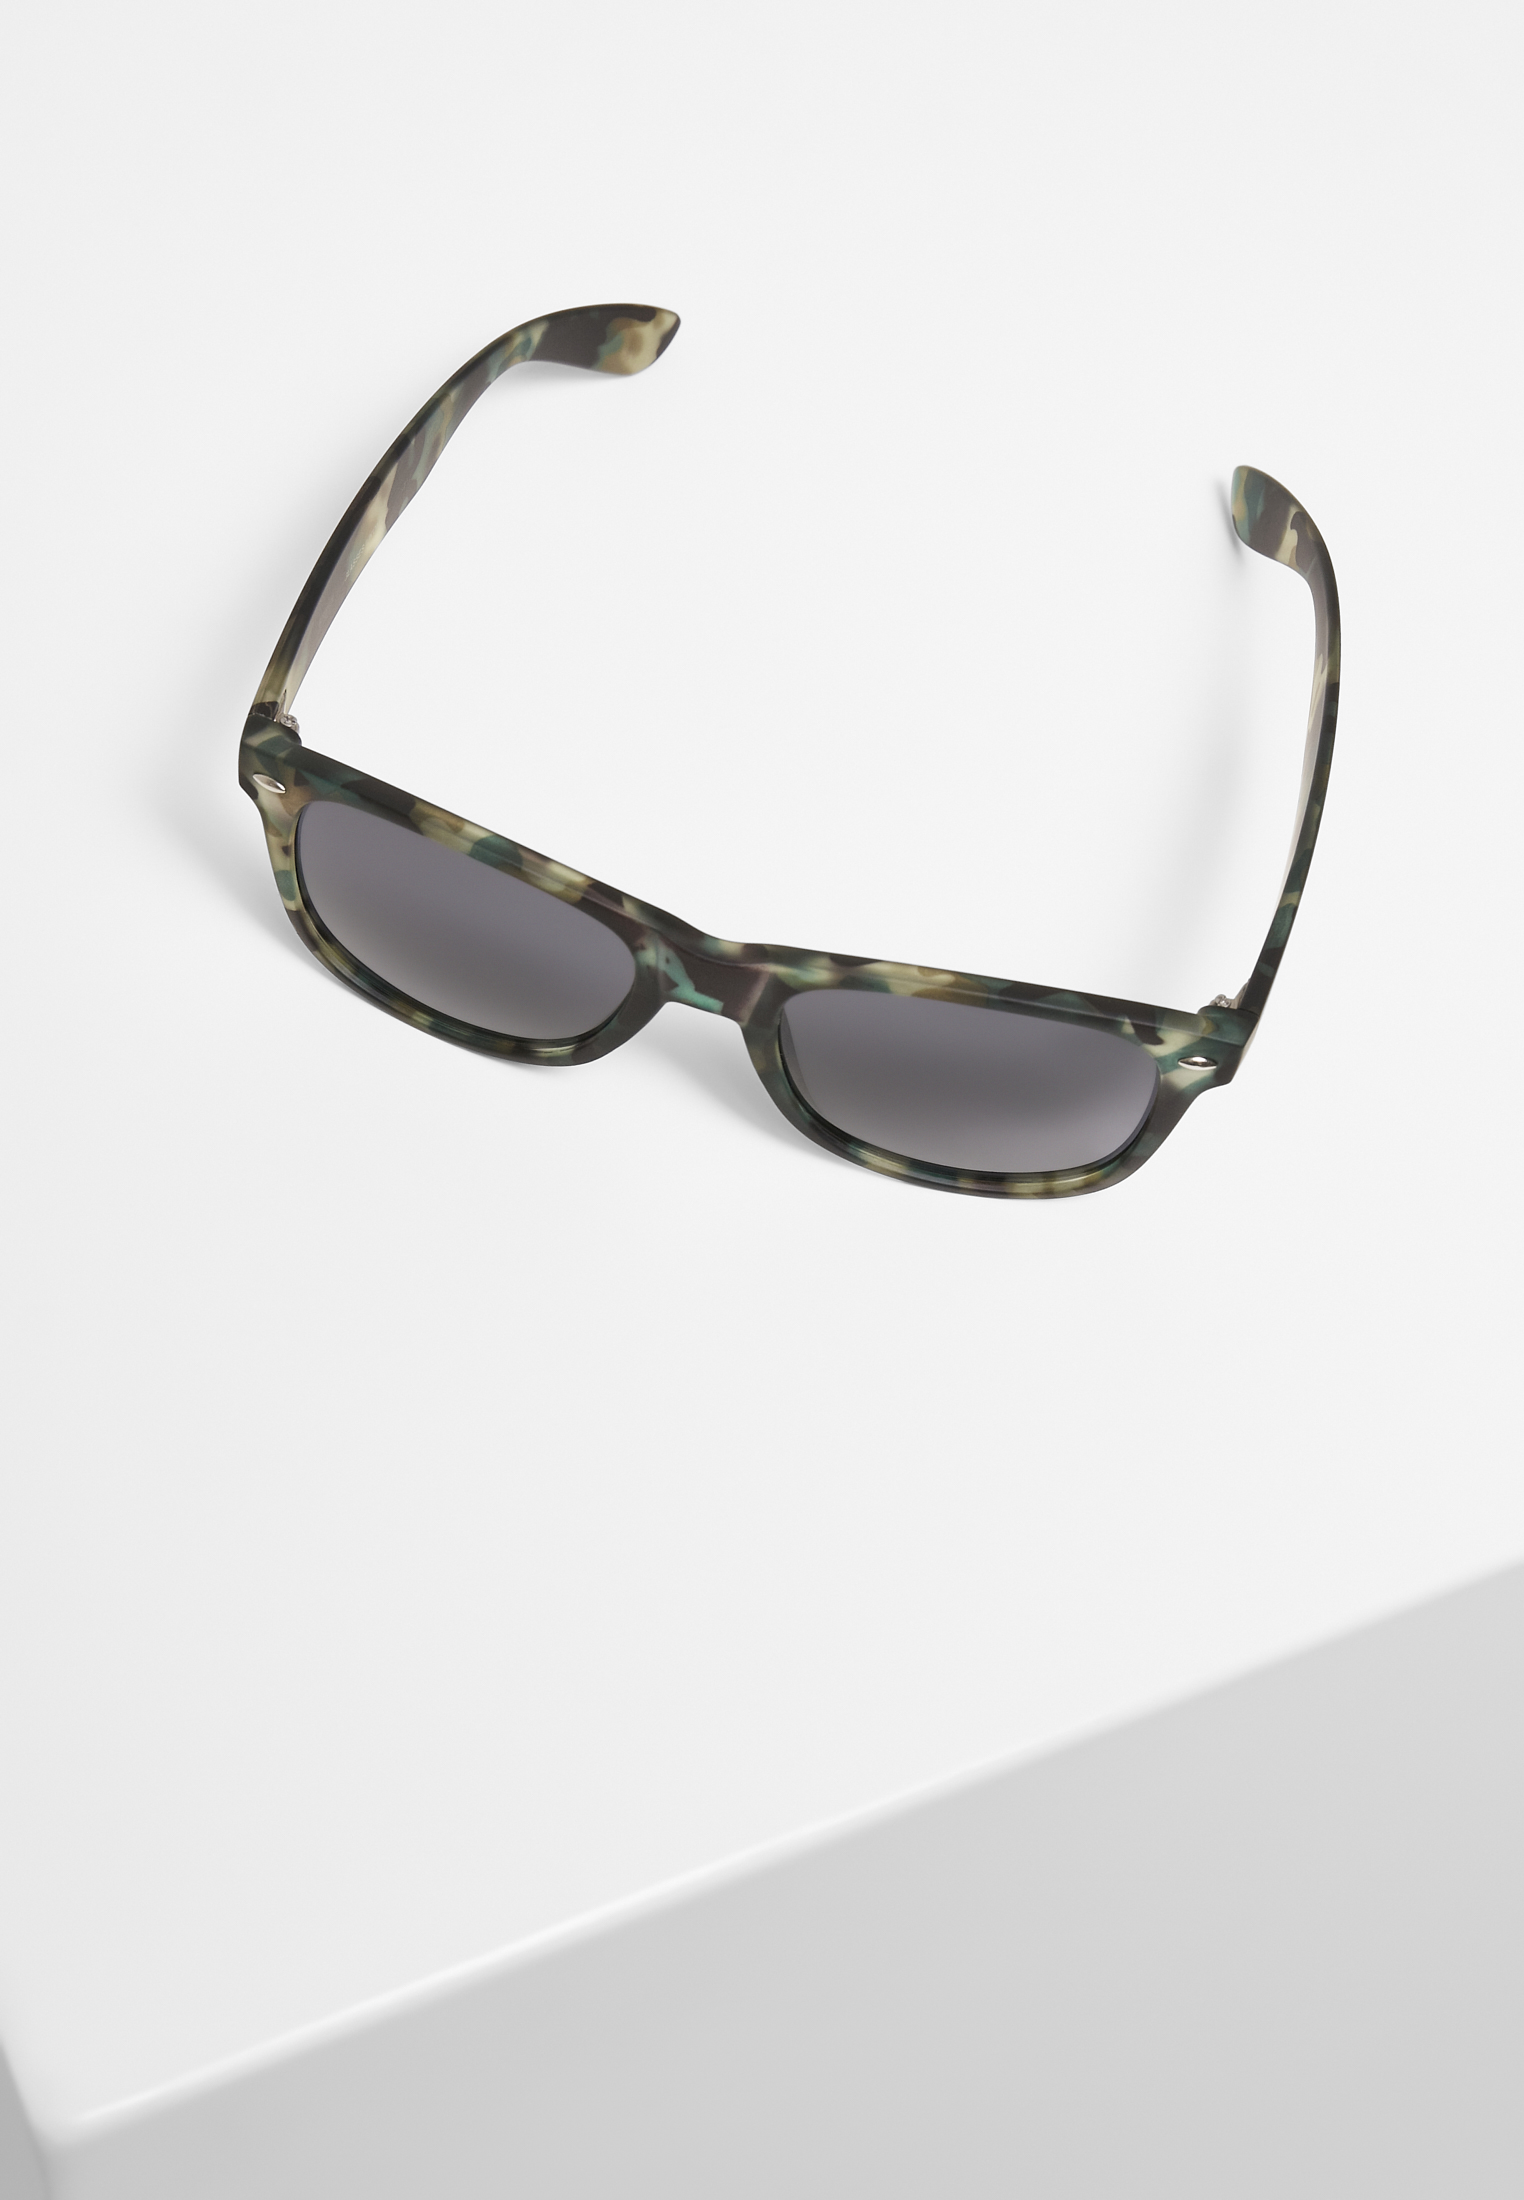 Sonnenbrillen Sunglasses Likoma UC in Farbe camo